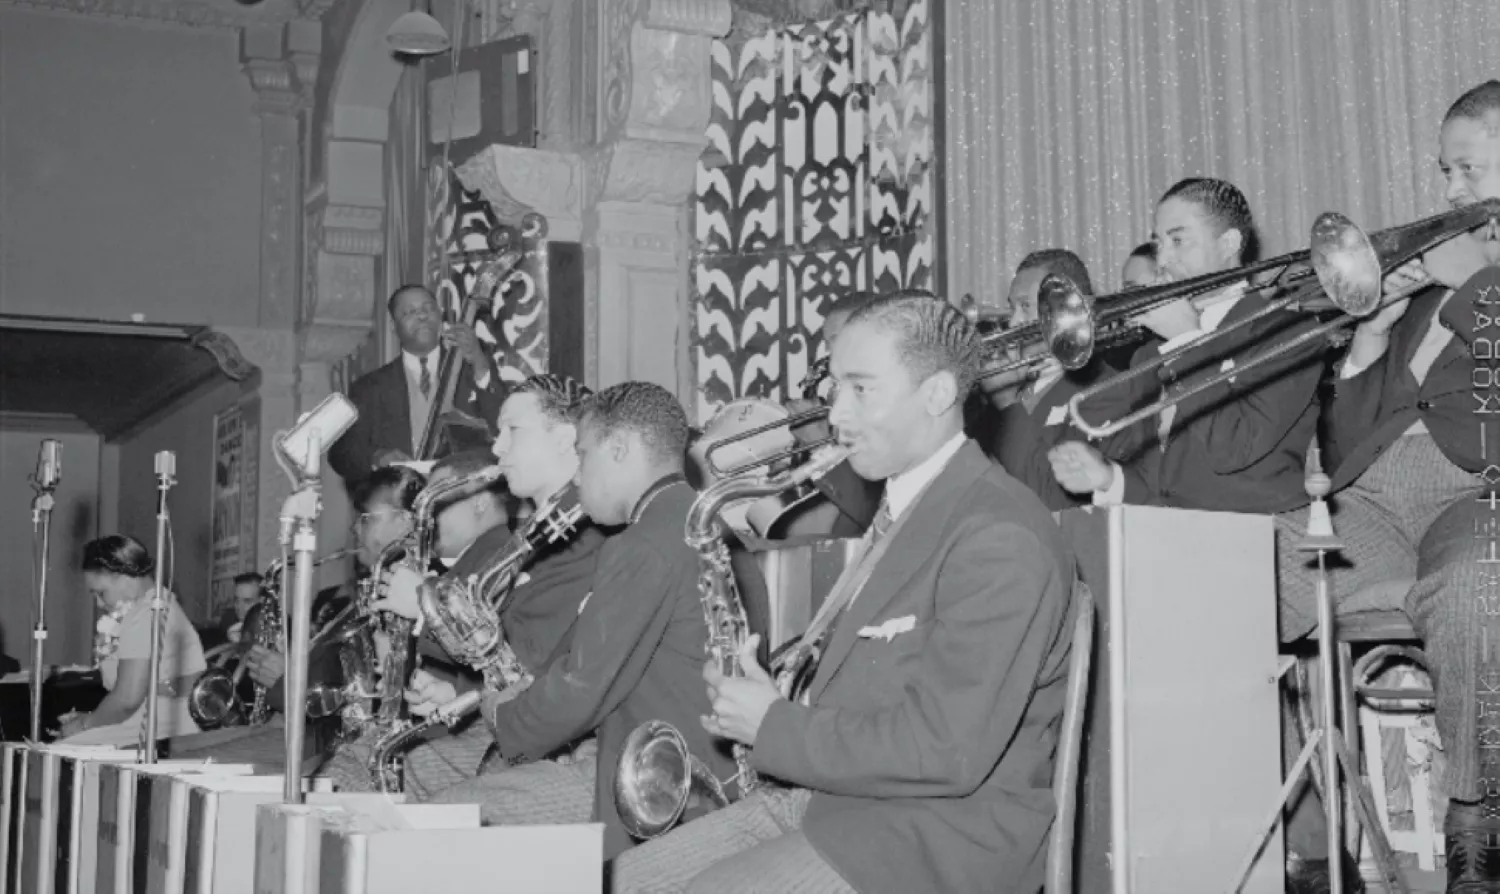 Concert de Jazz dels aliats al front europeu durant la Segona Guerra Mundial